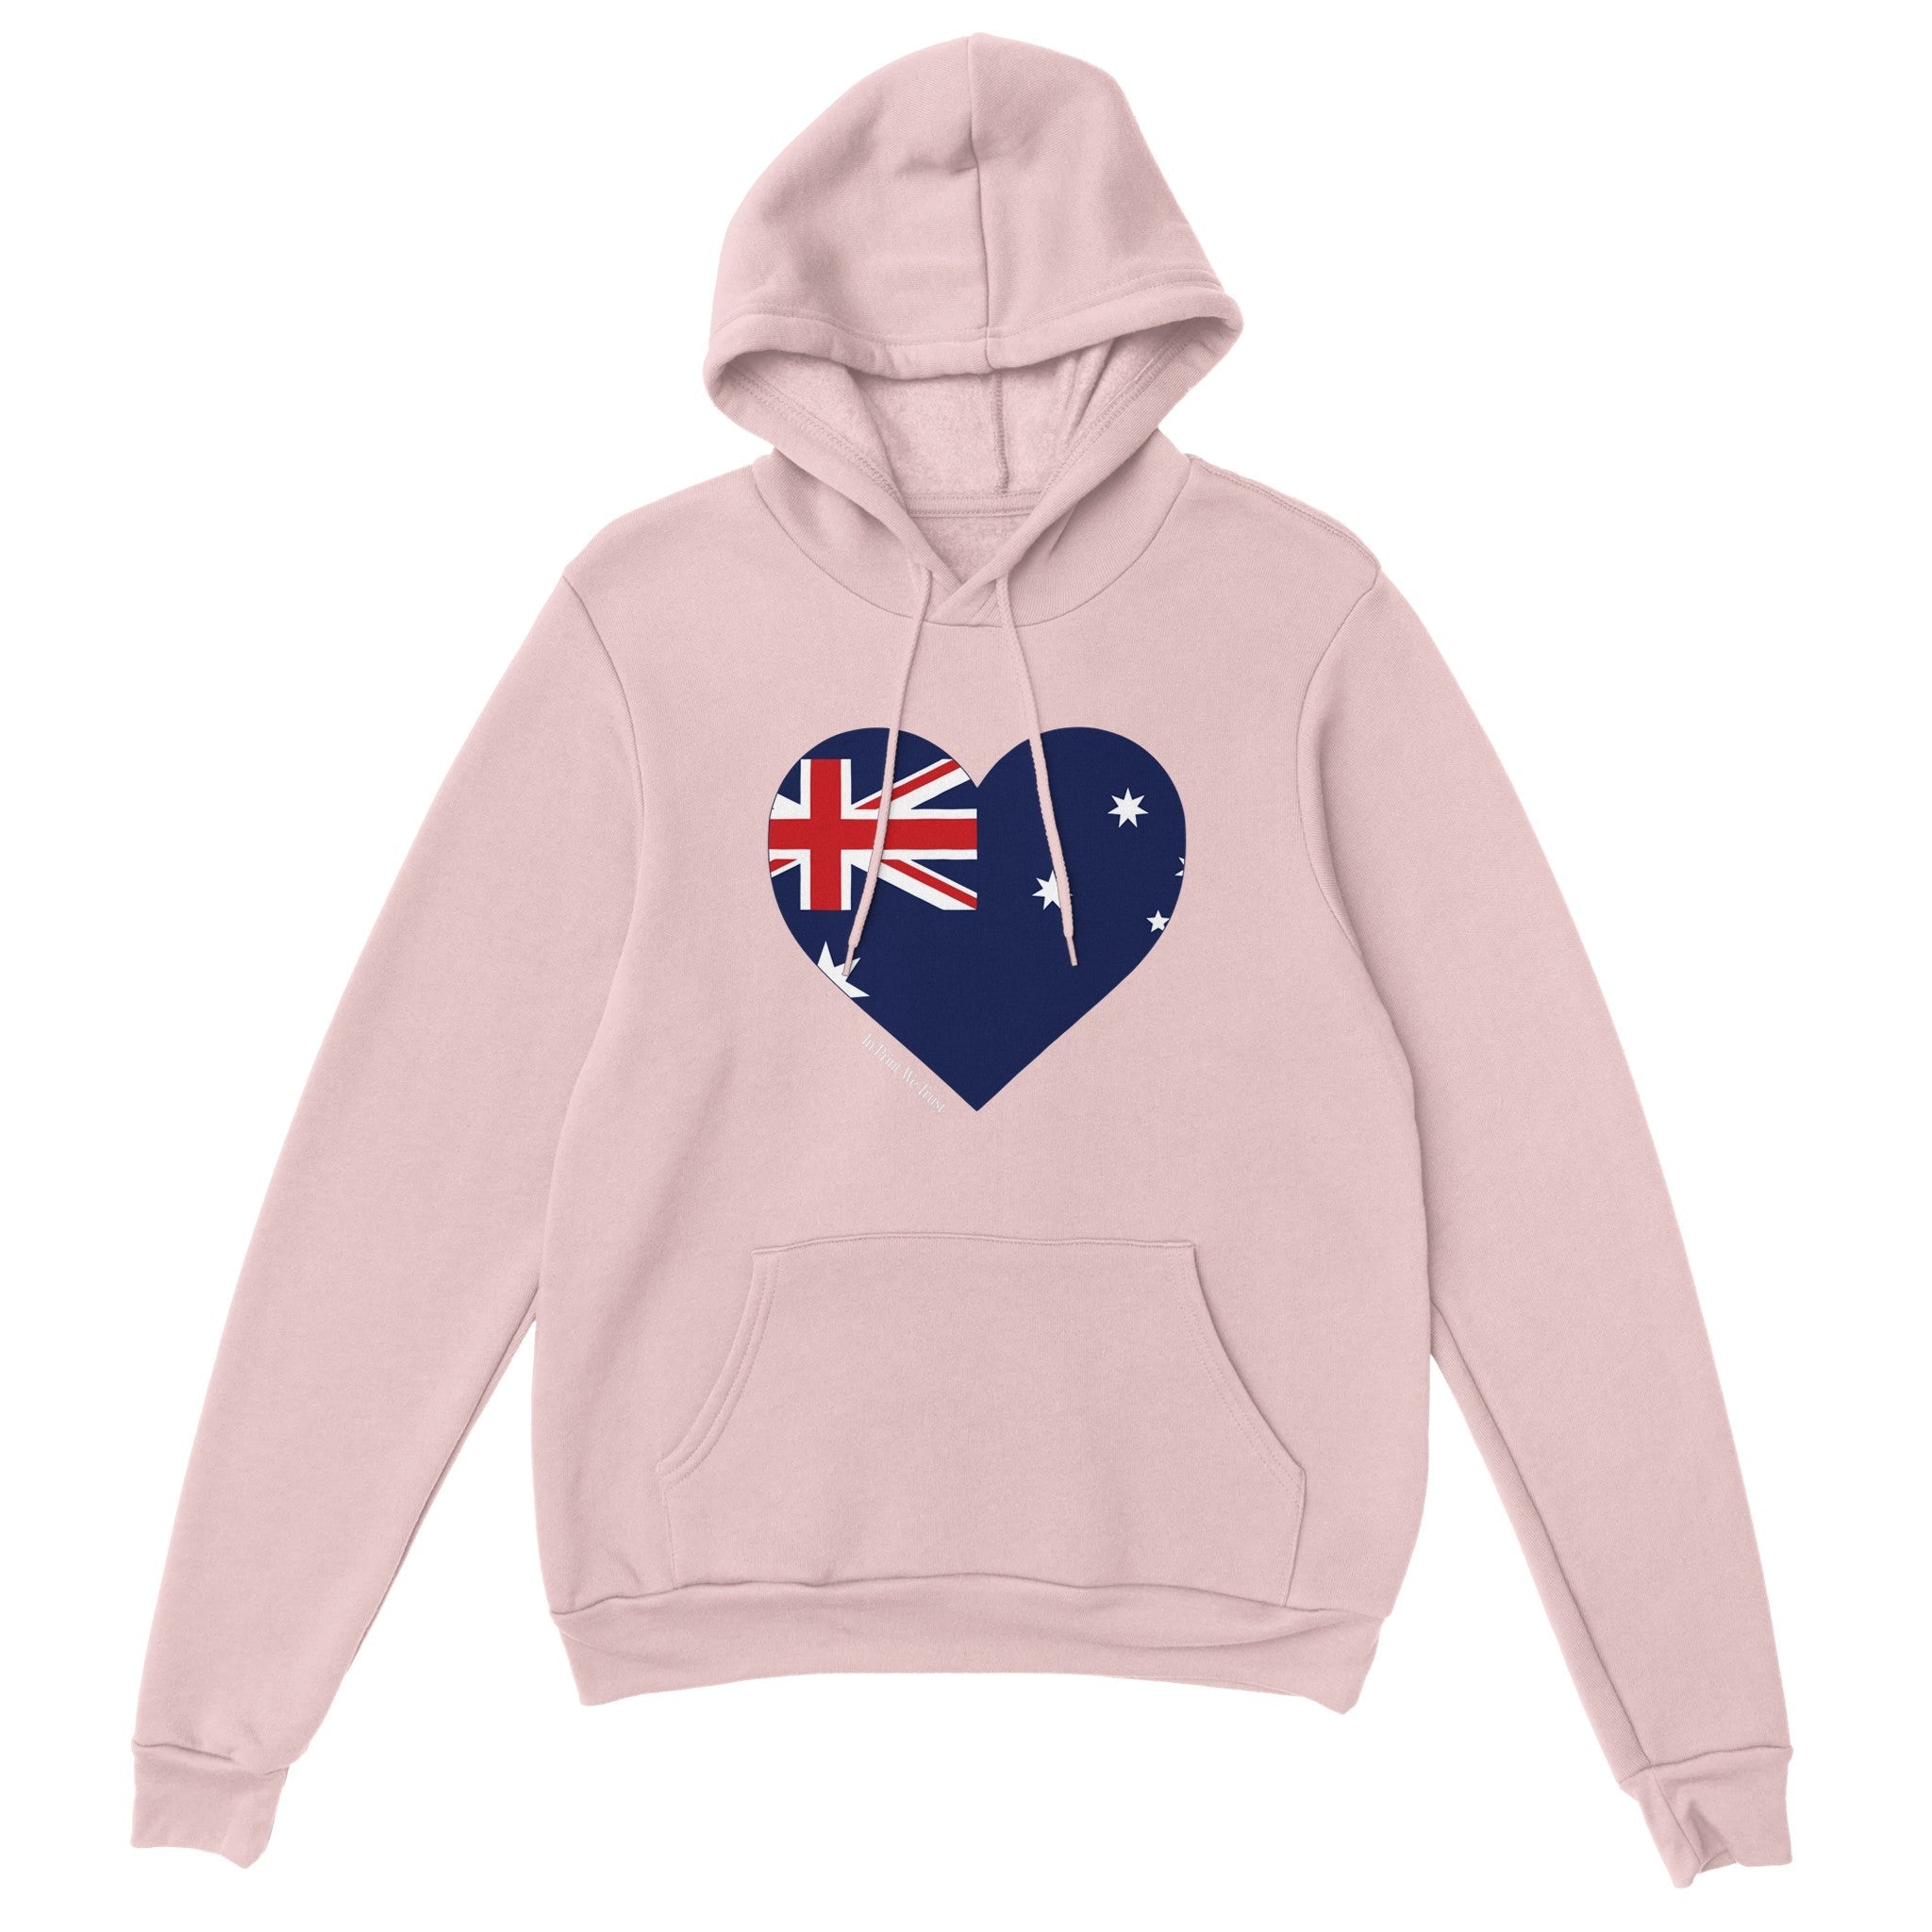 'Australia' hoodie - In Print We Trust